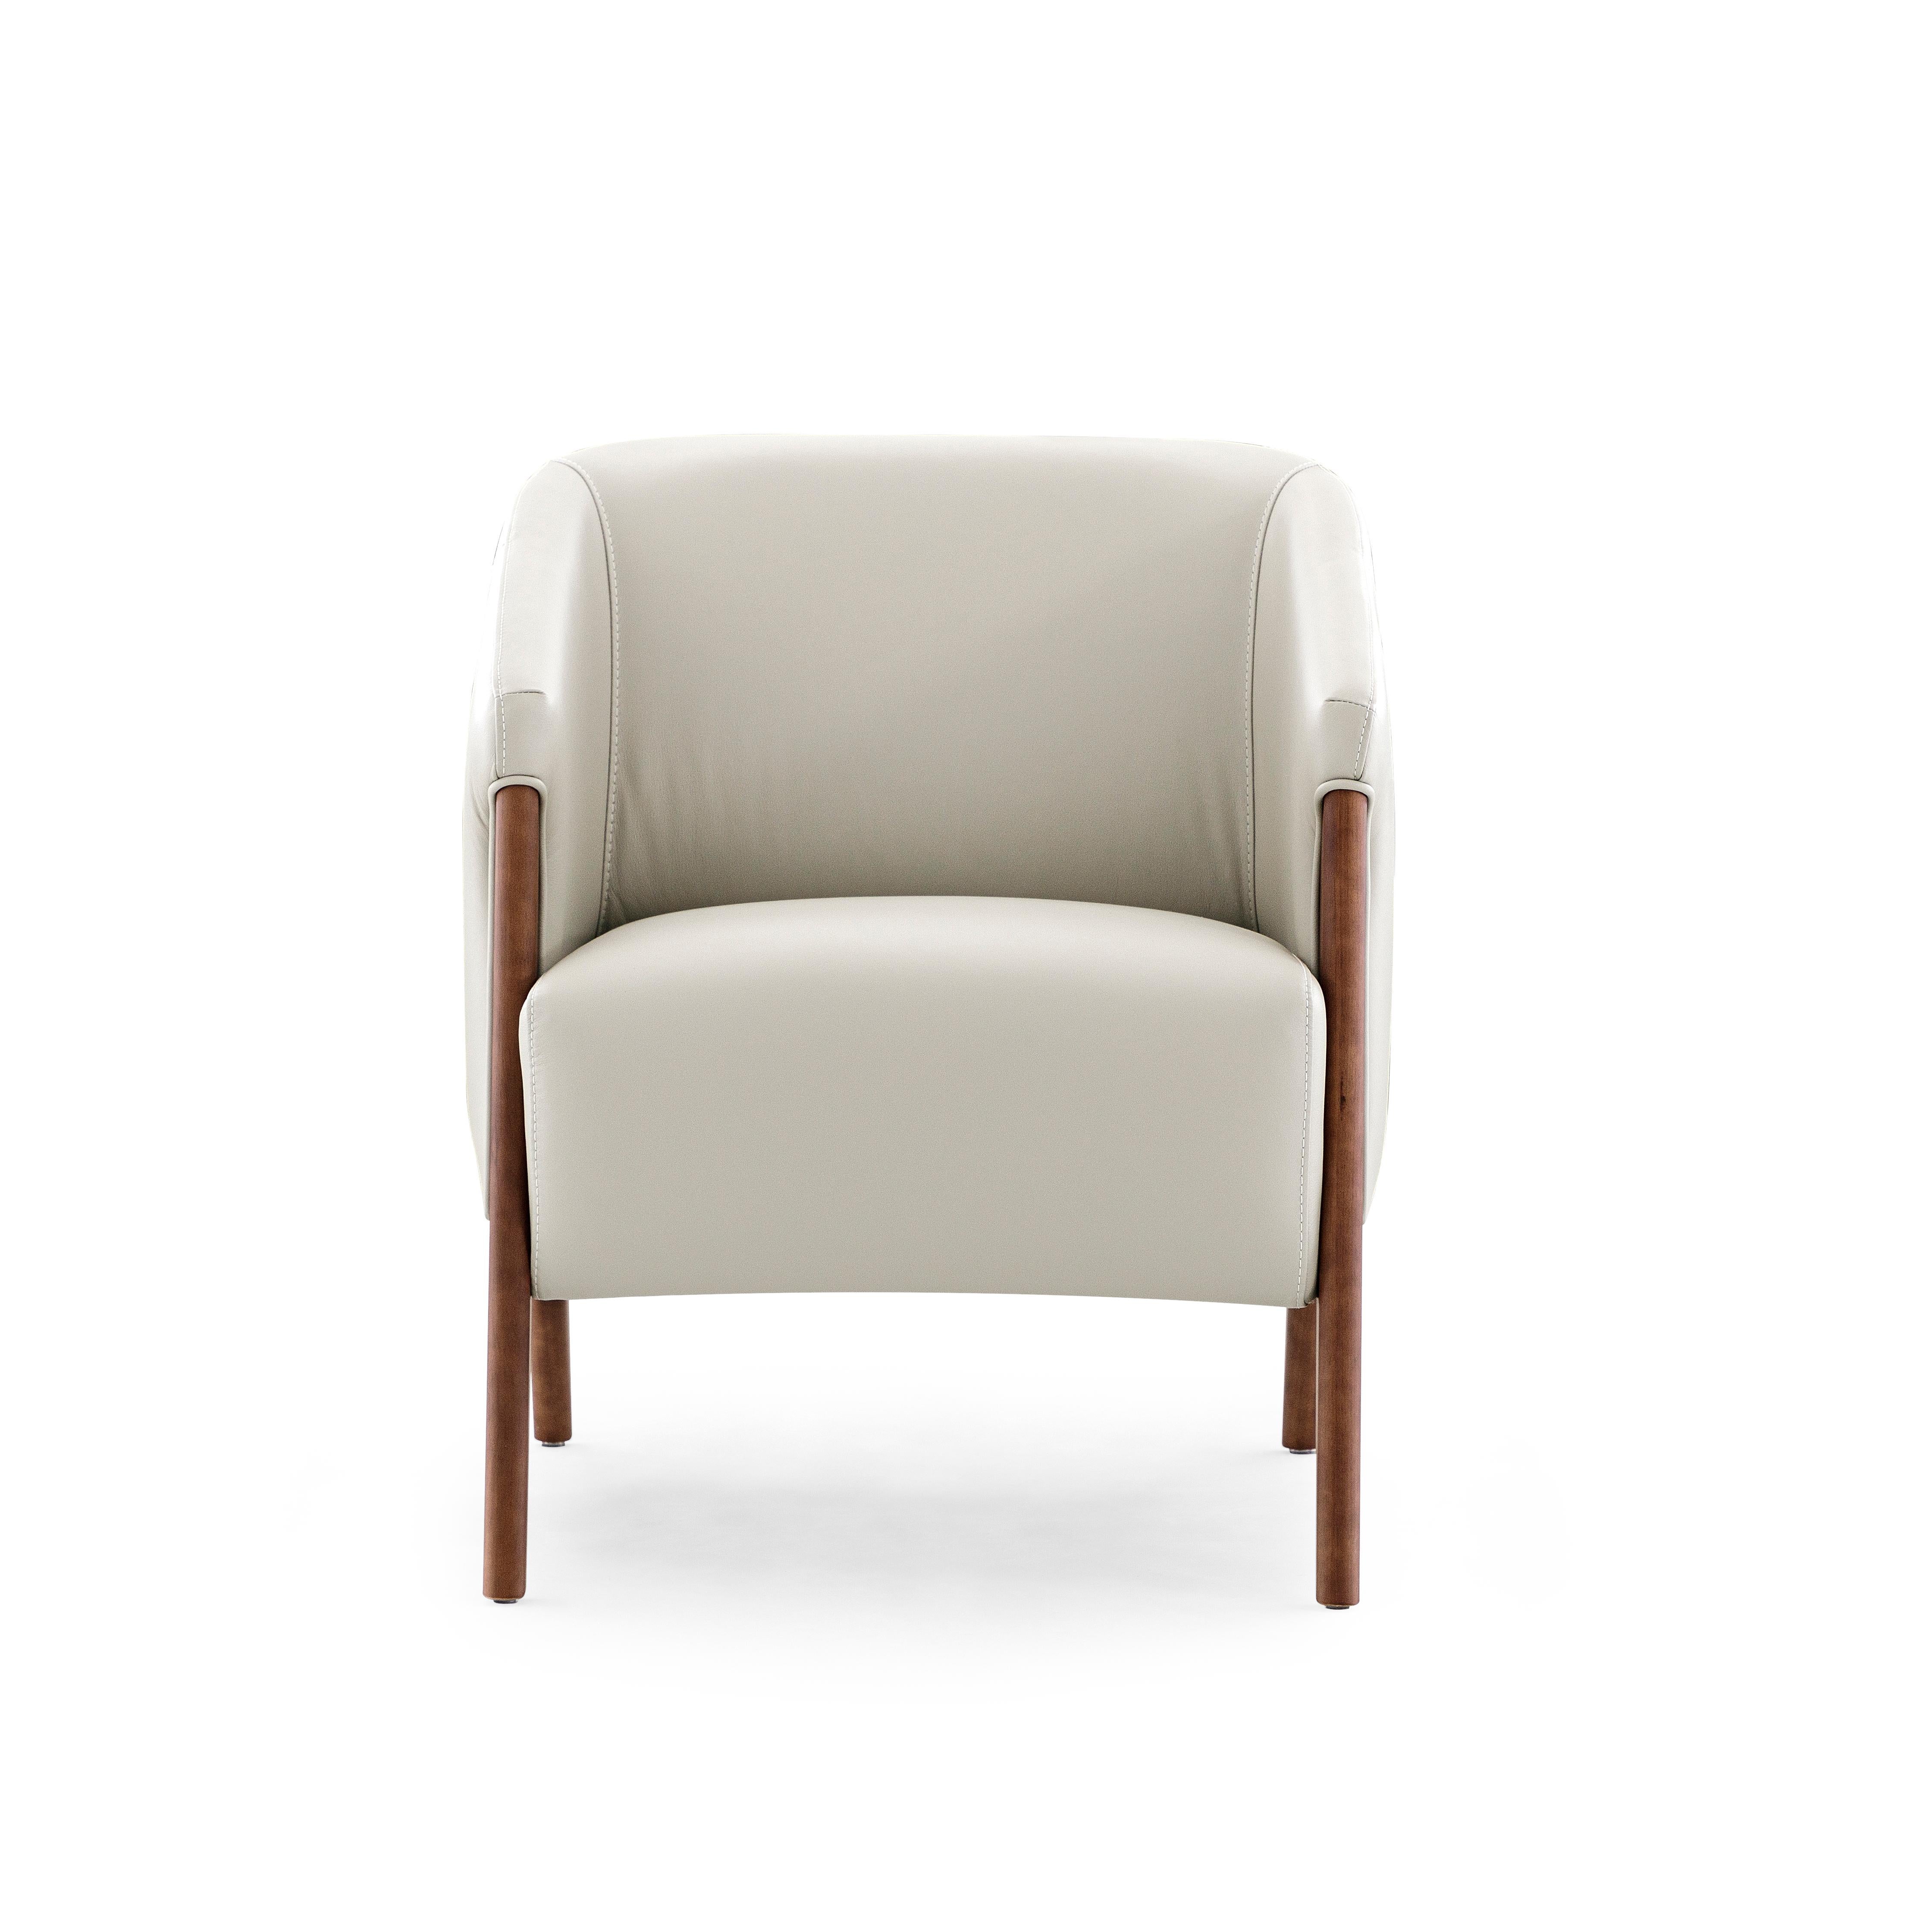 Le fauteuil Abra est un ajout accueillant à n'importe quelle pièce de votre décor, avec un magnifique revêtement en cuir blanc et un cadre en finition bois de noyer. Ce fauteuil a été créé par notre incroyable équipe d'architectes et de designers